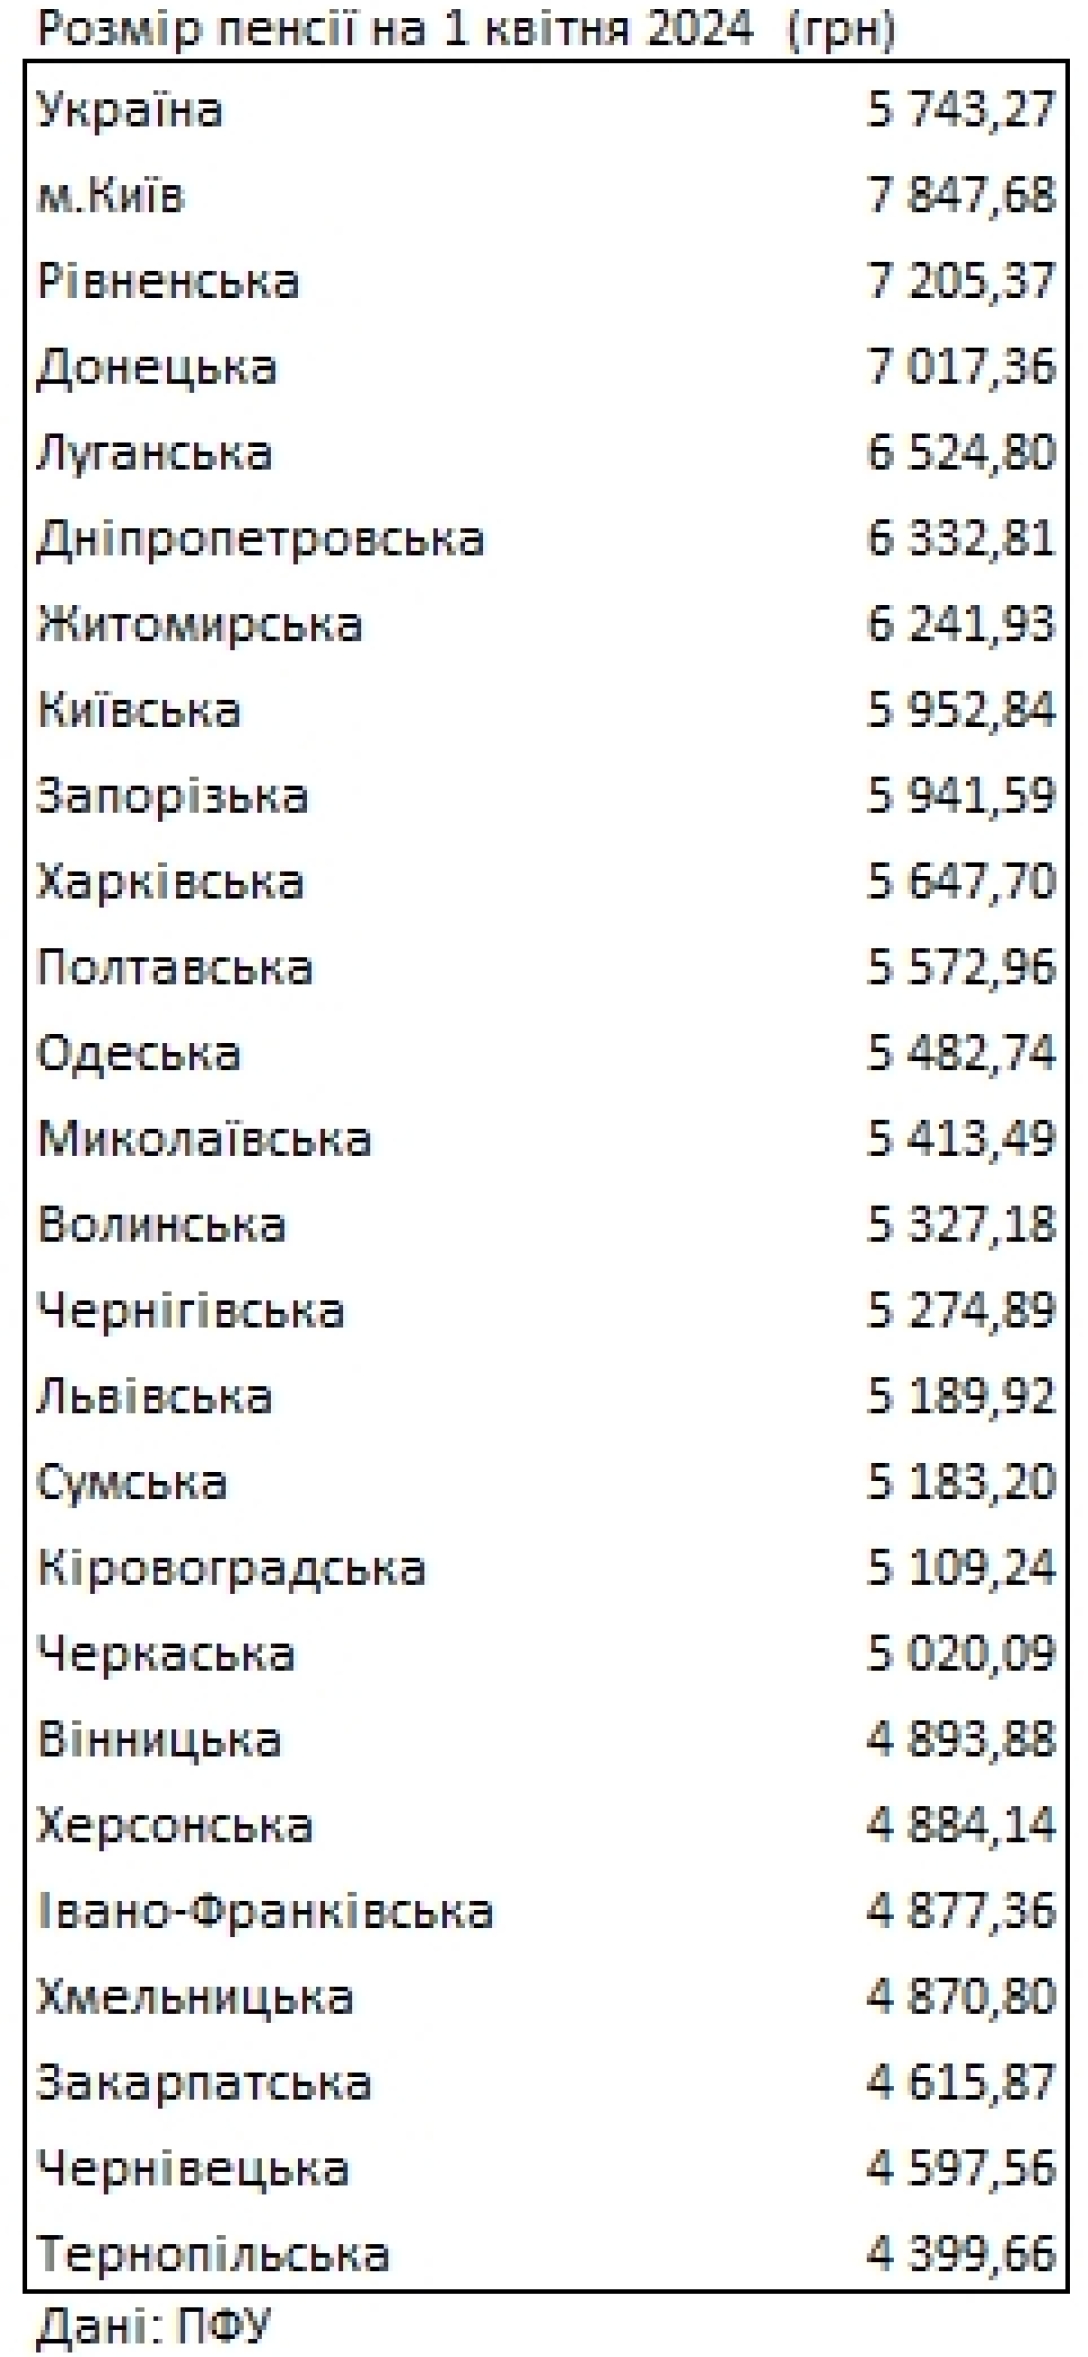 Розміри пенсій у різних областях України